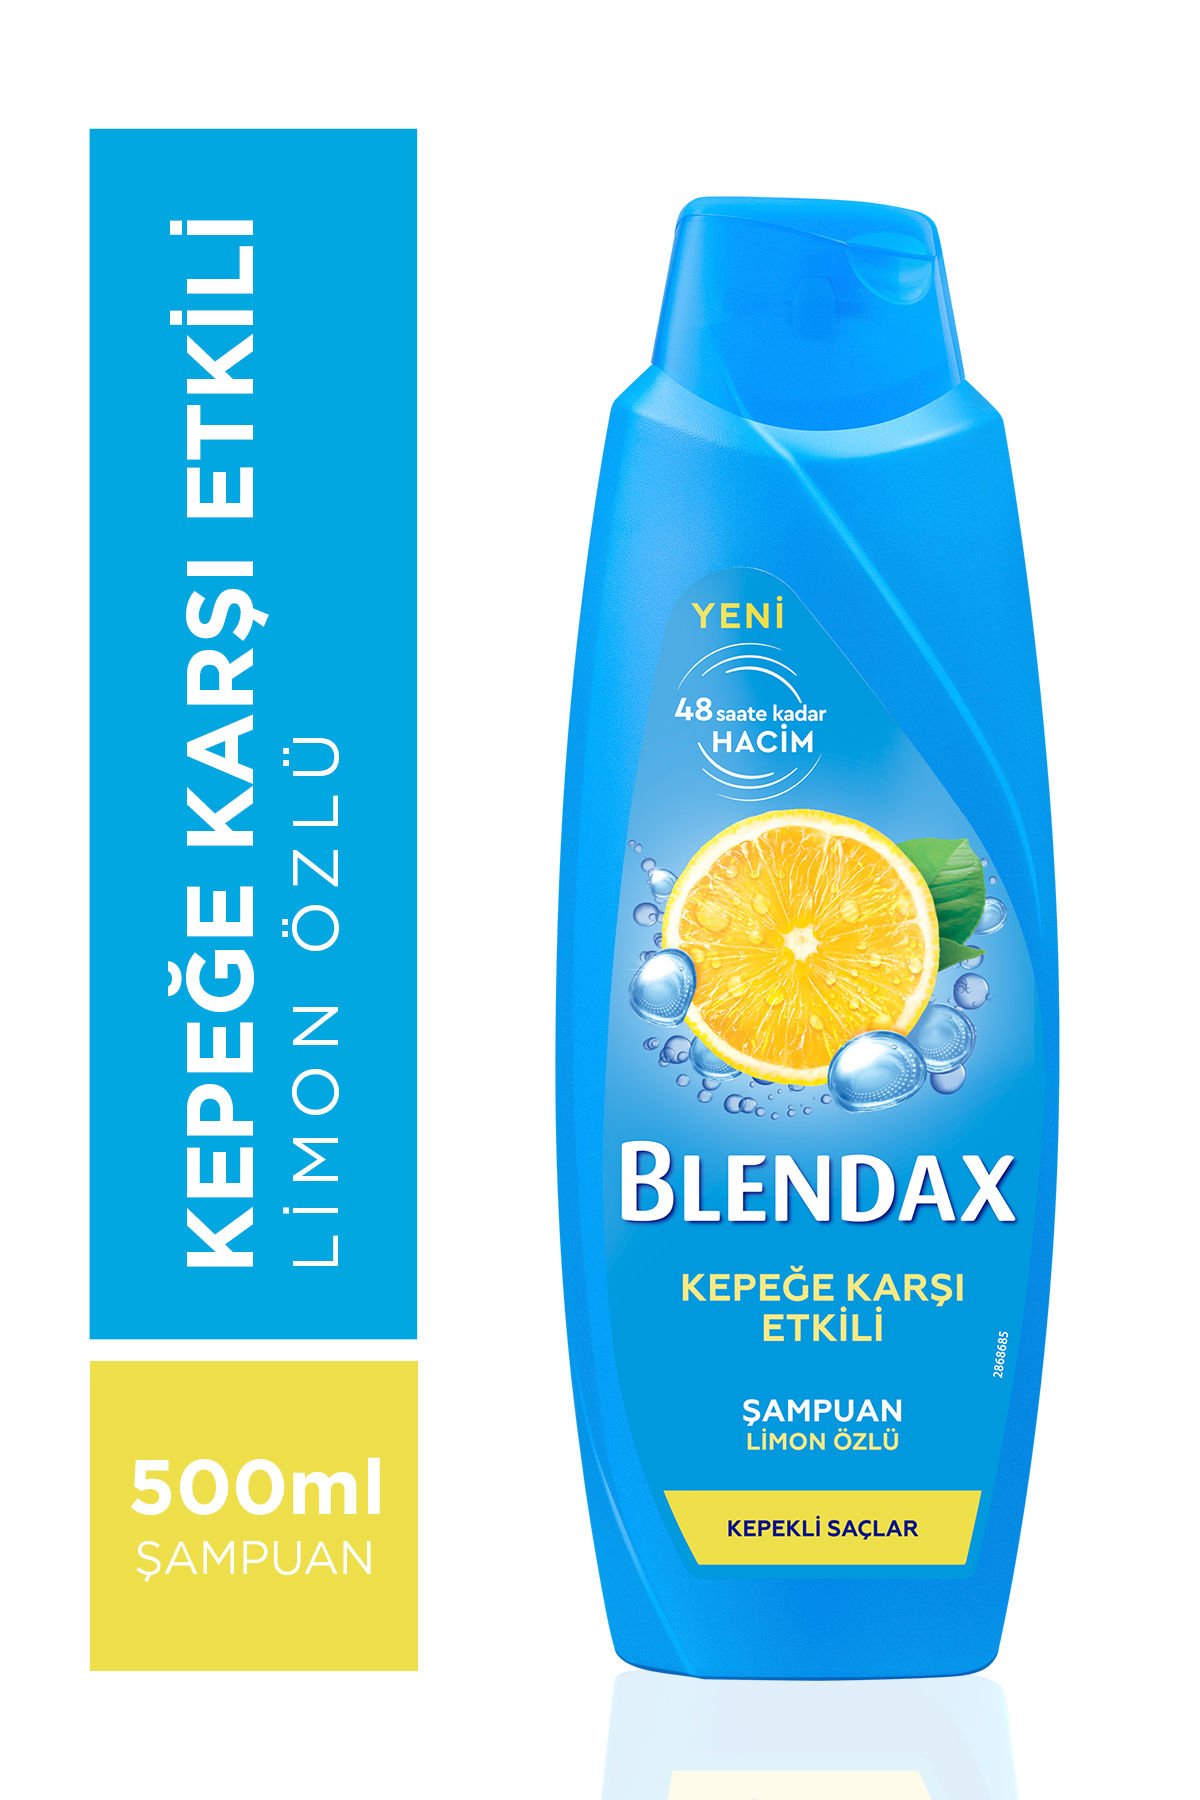 Blx 500 ml Şampuan Kepeğe Karşı Limon Özlü